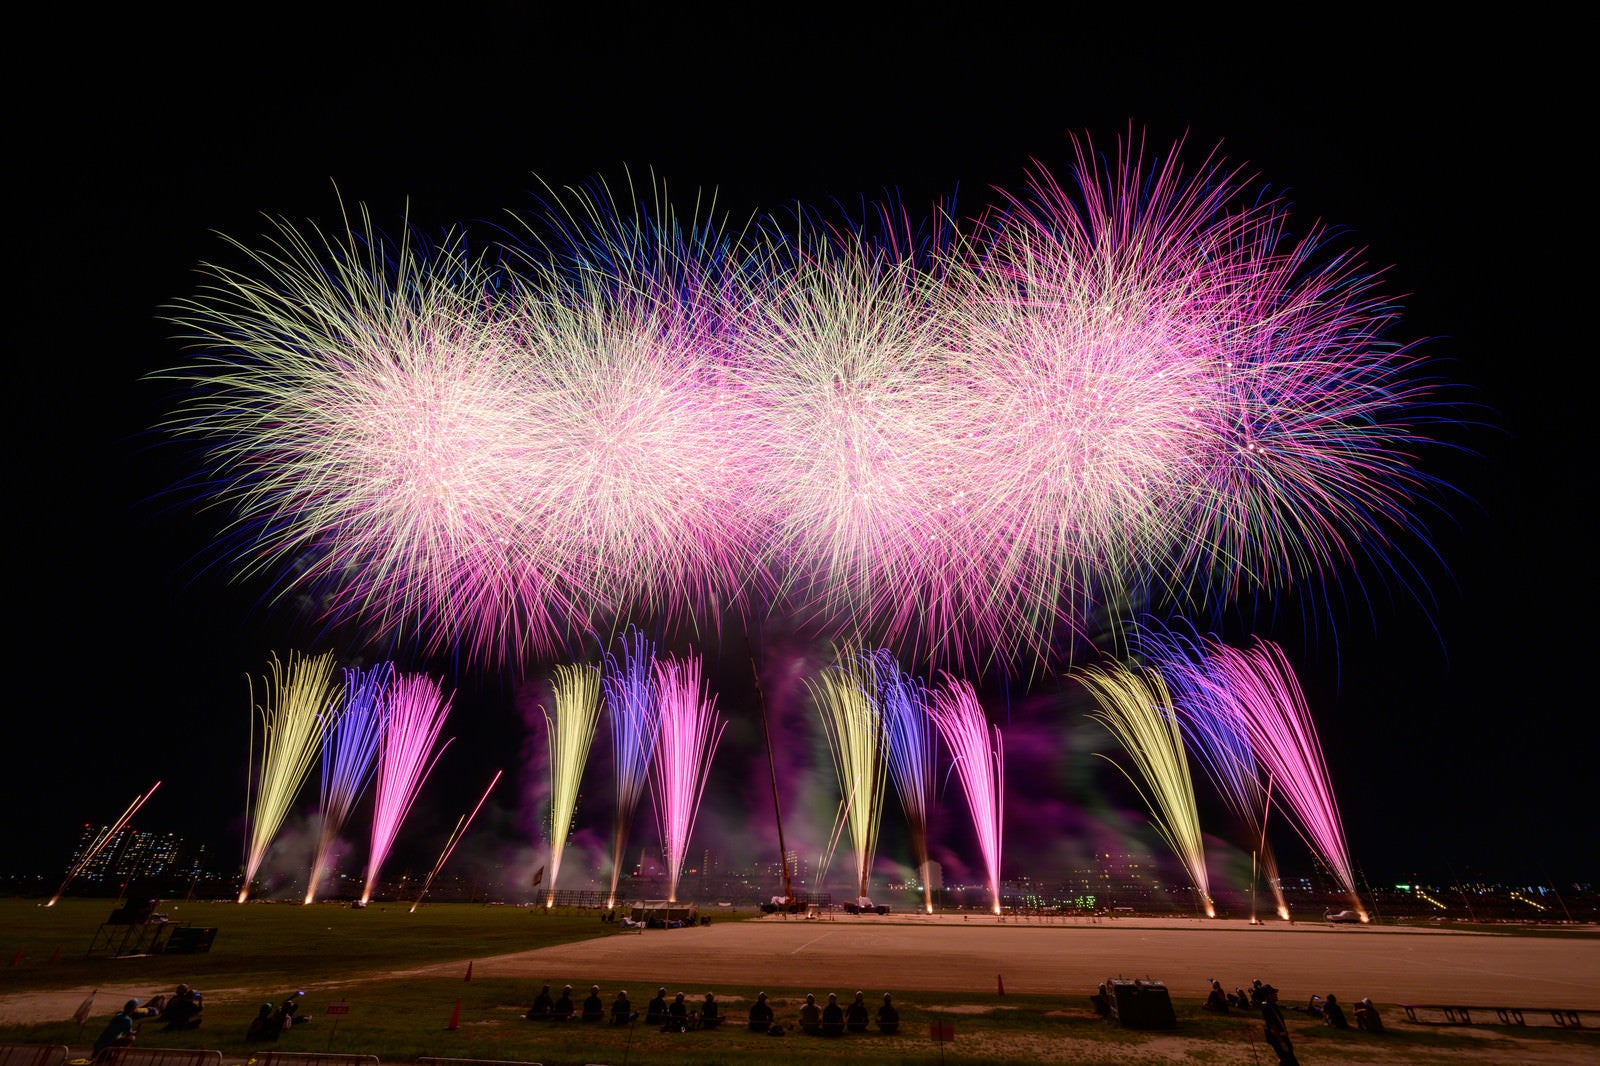 「江戸川の河川敷で打ち上げられる花火の様子」の写真